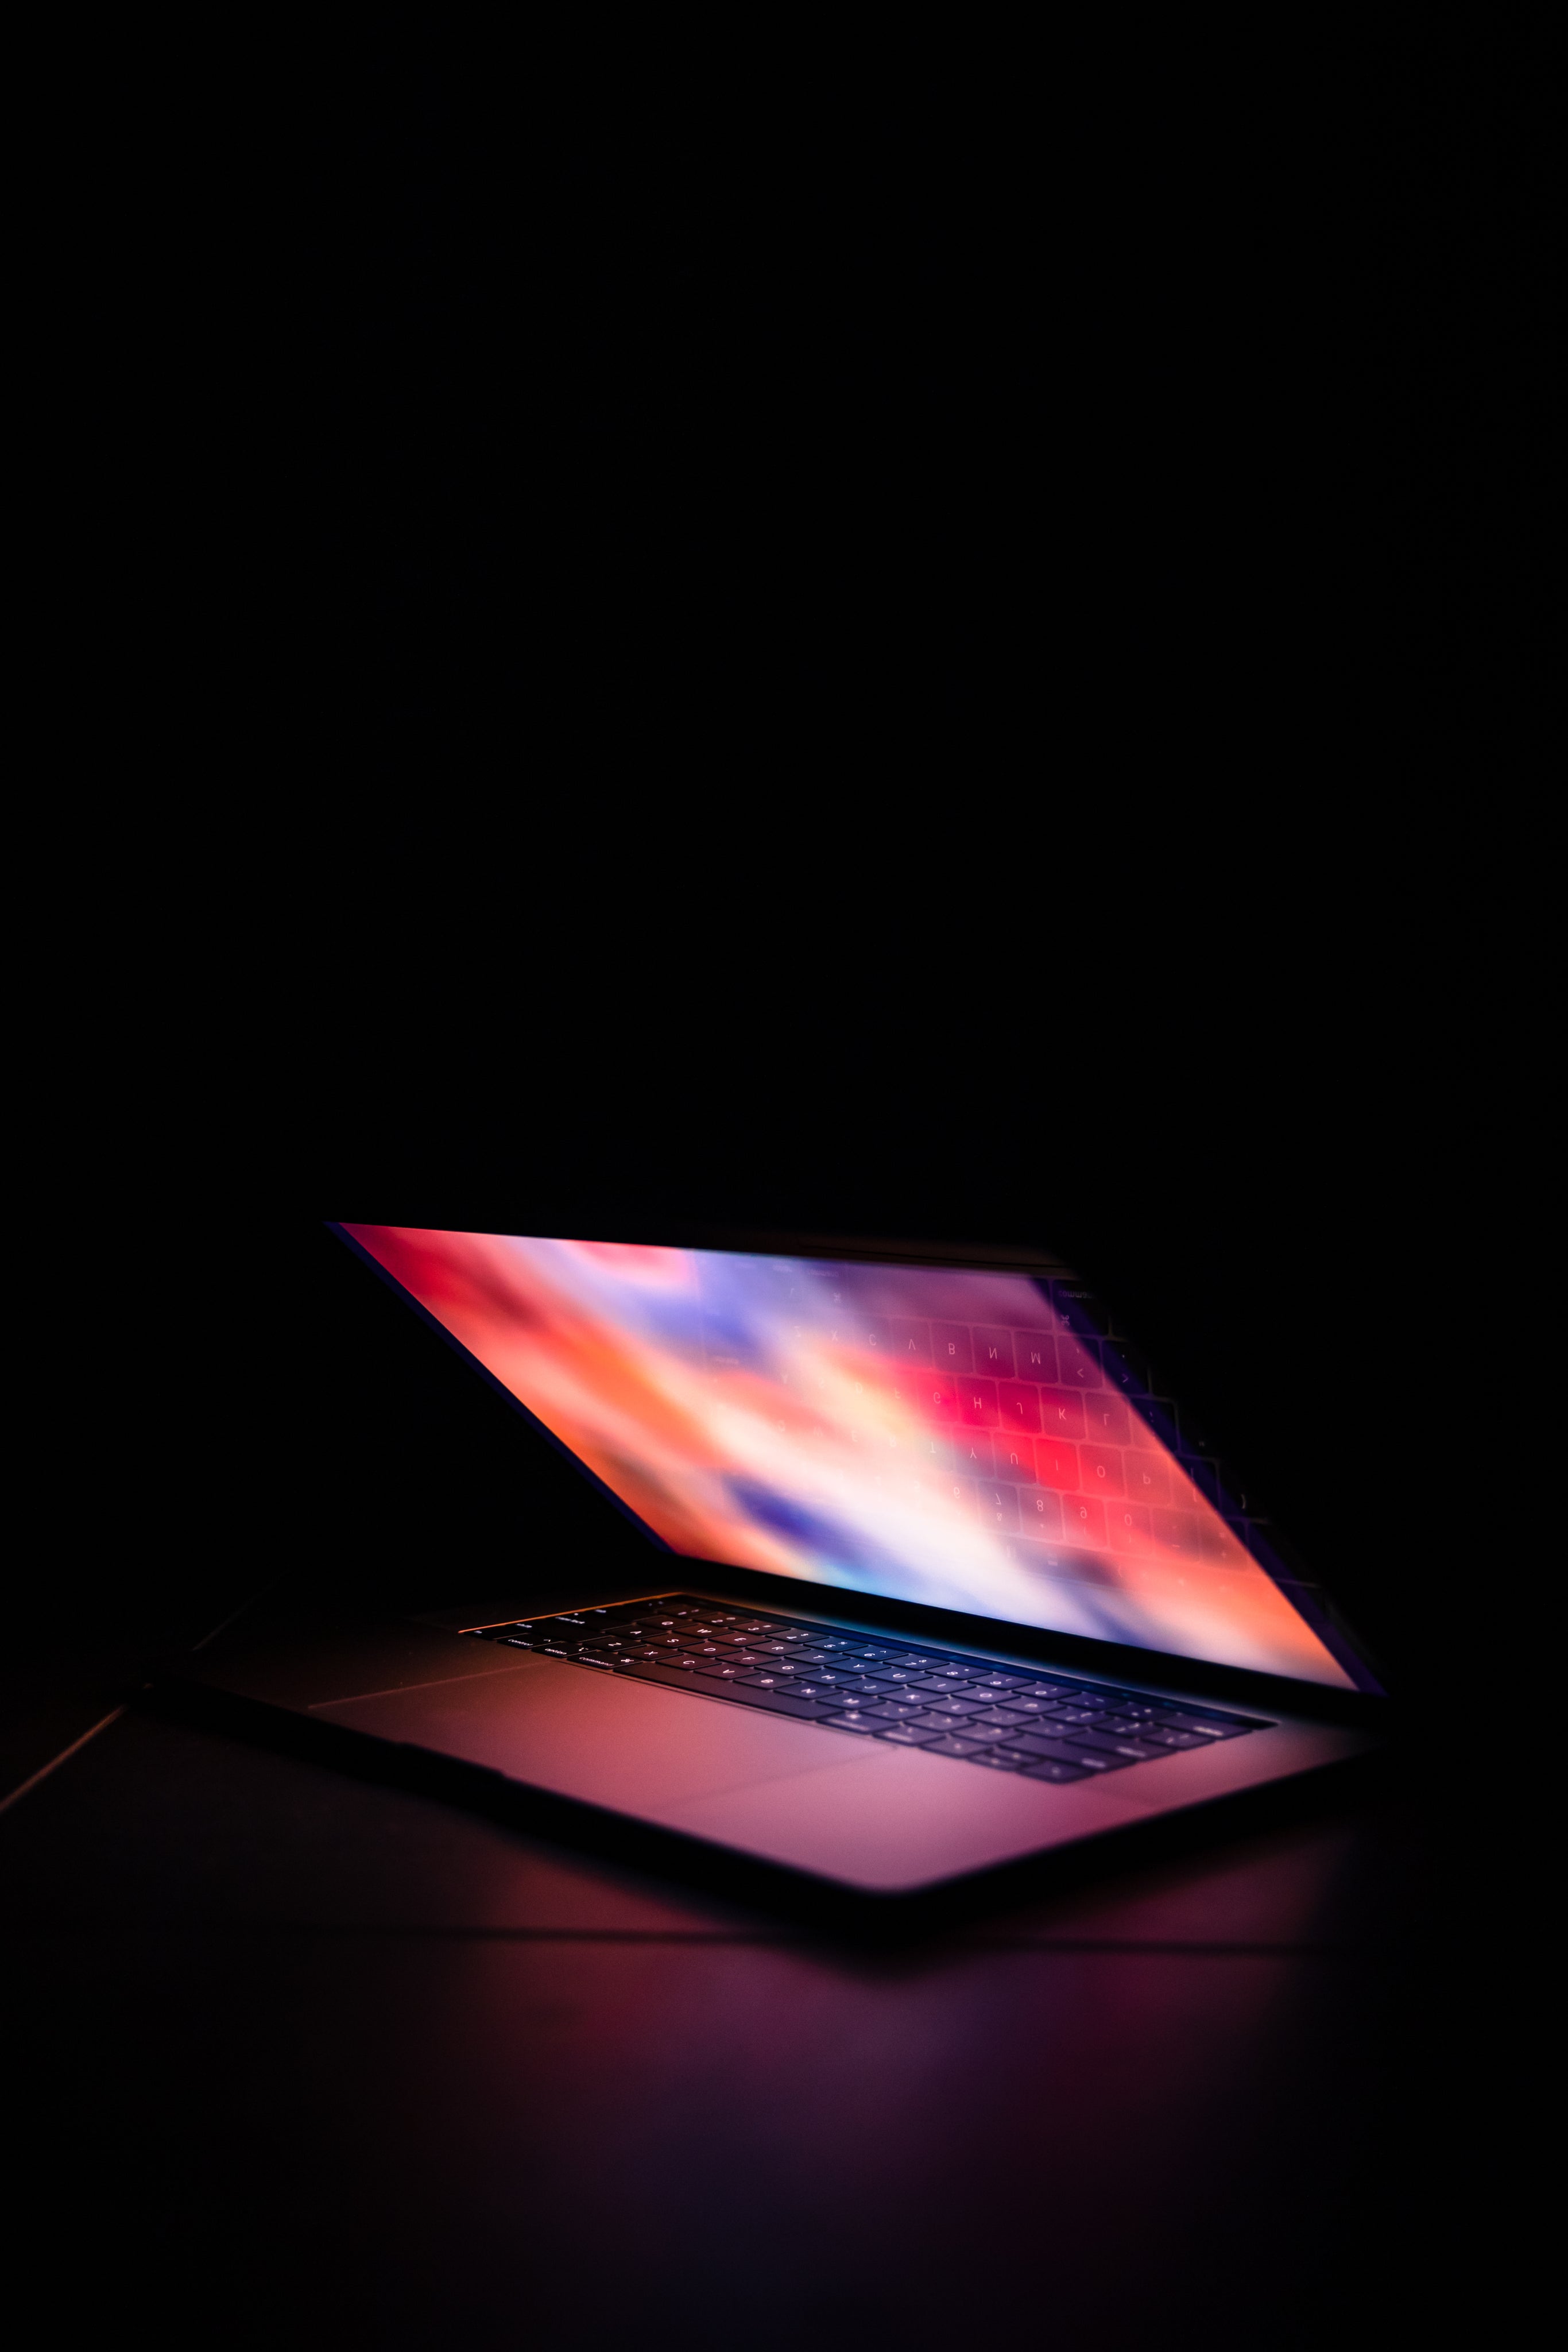 portrait-of-illuminated-laptop.jpg